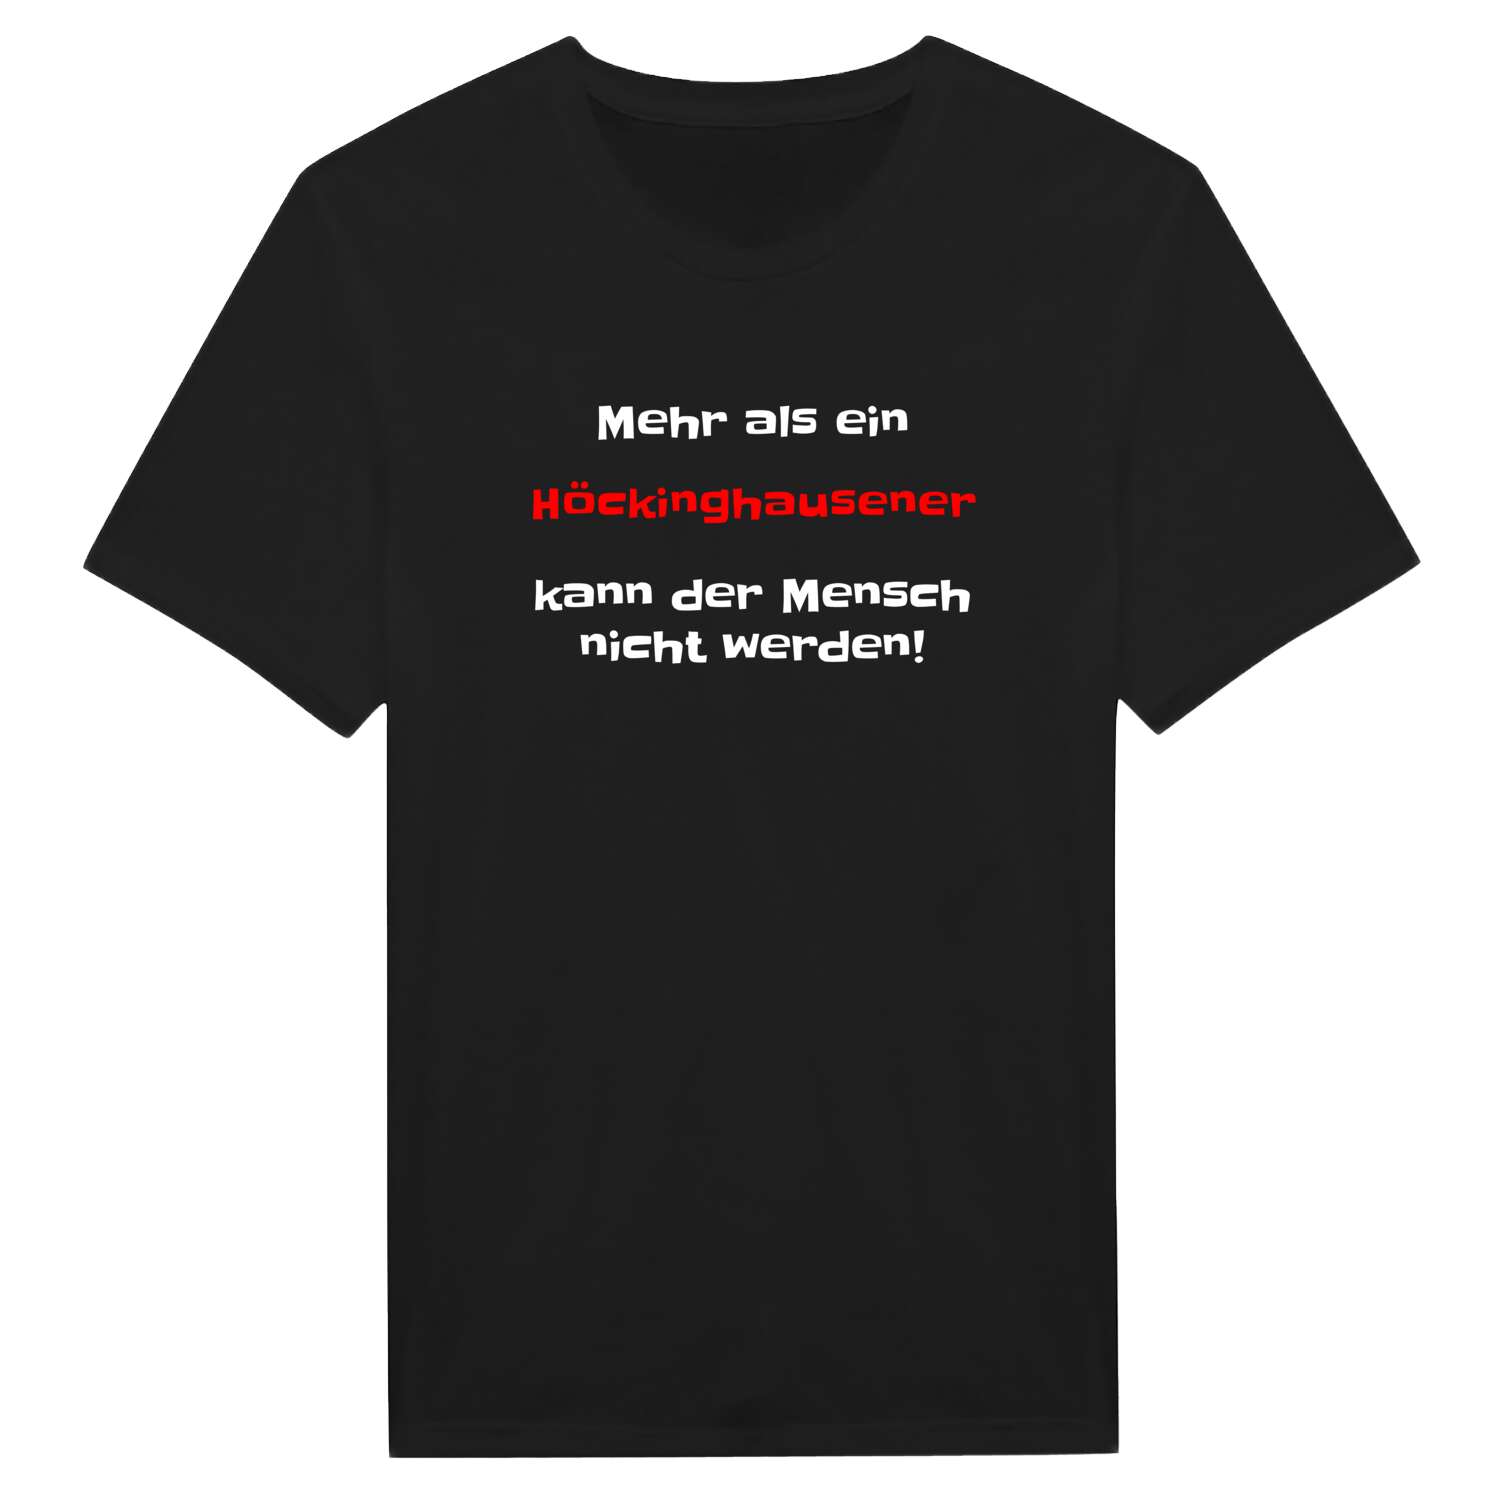 Höckinghausen T-Shirt »Mehr als ein«